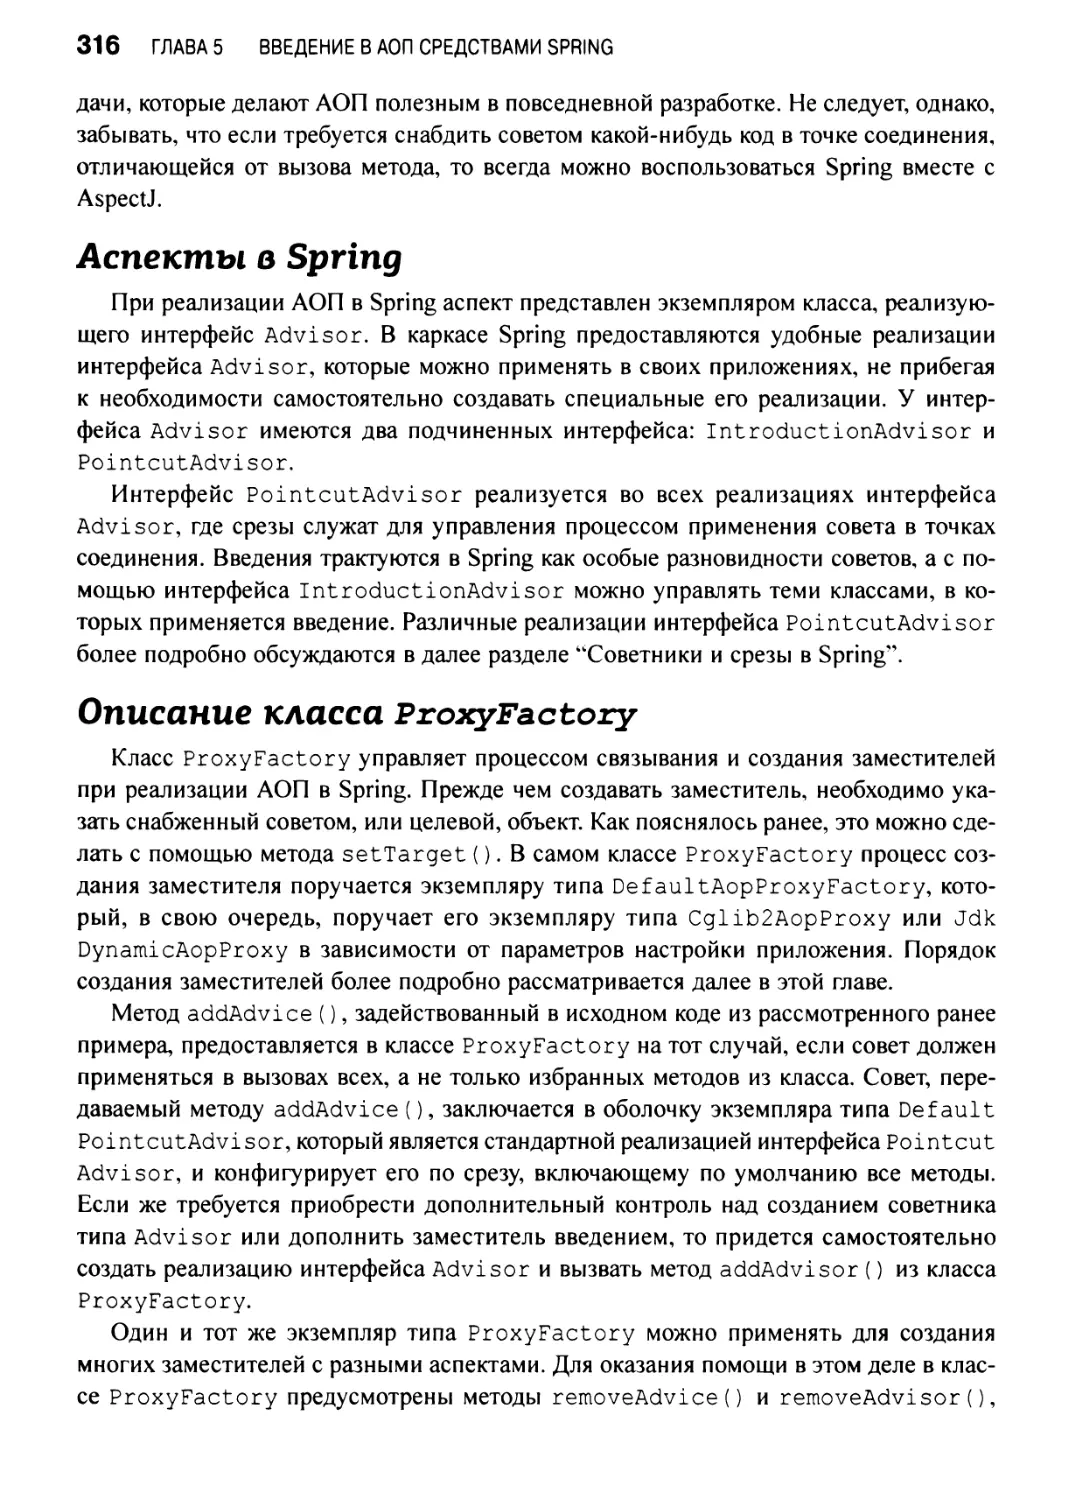 Аспекты в Spring
Описание класса ProxyFactory